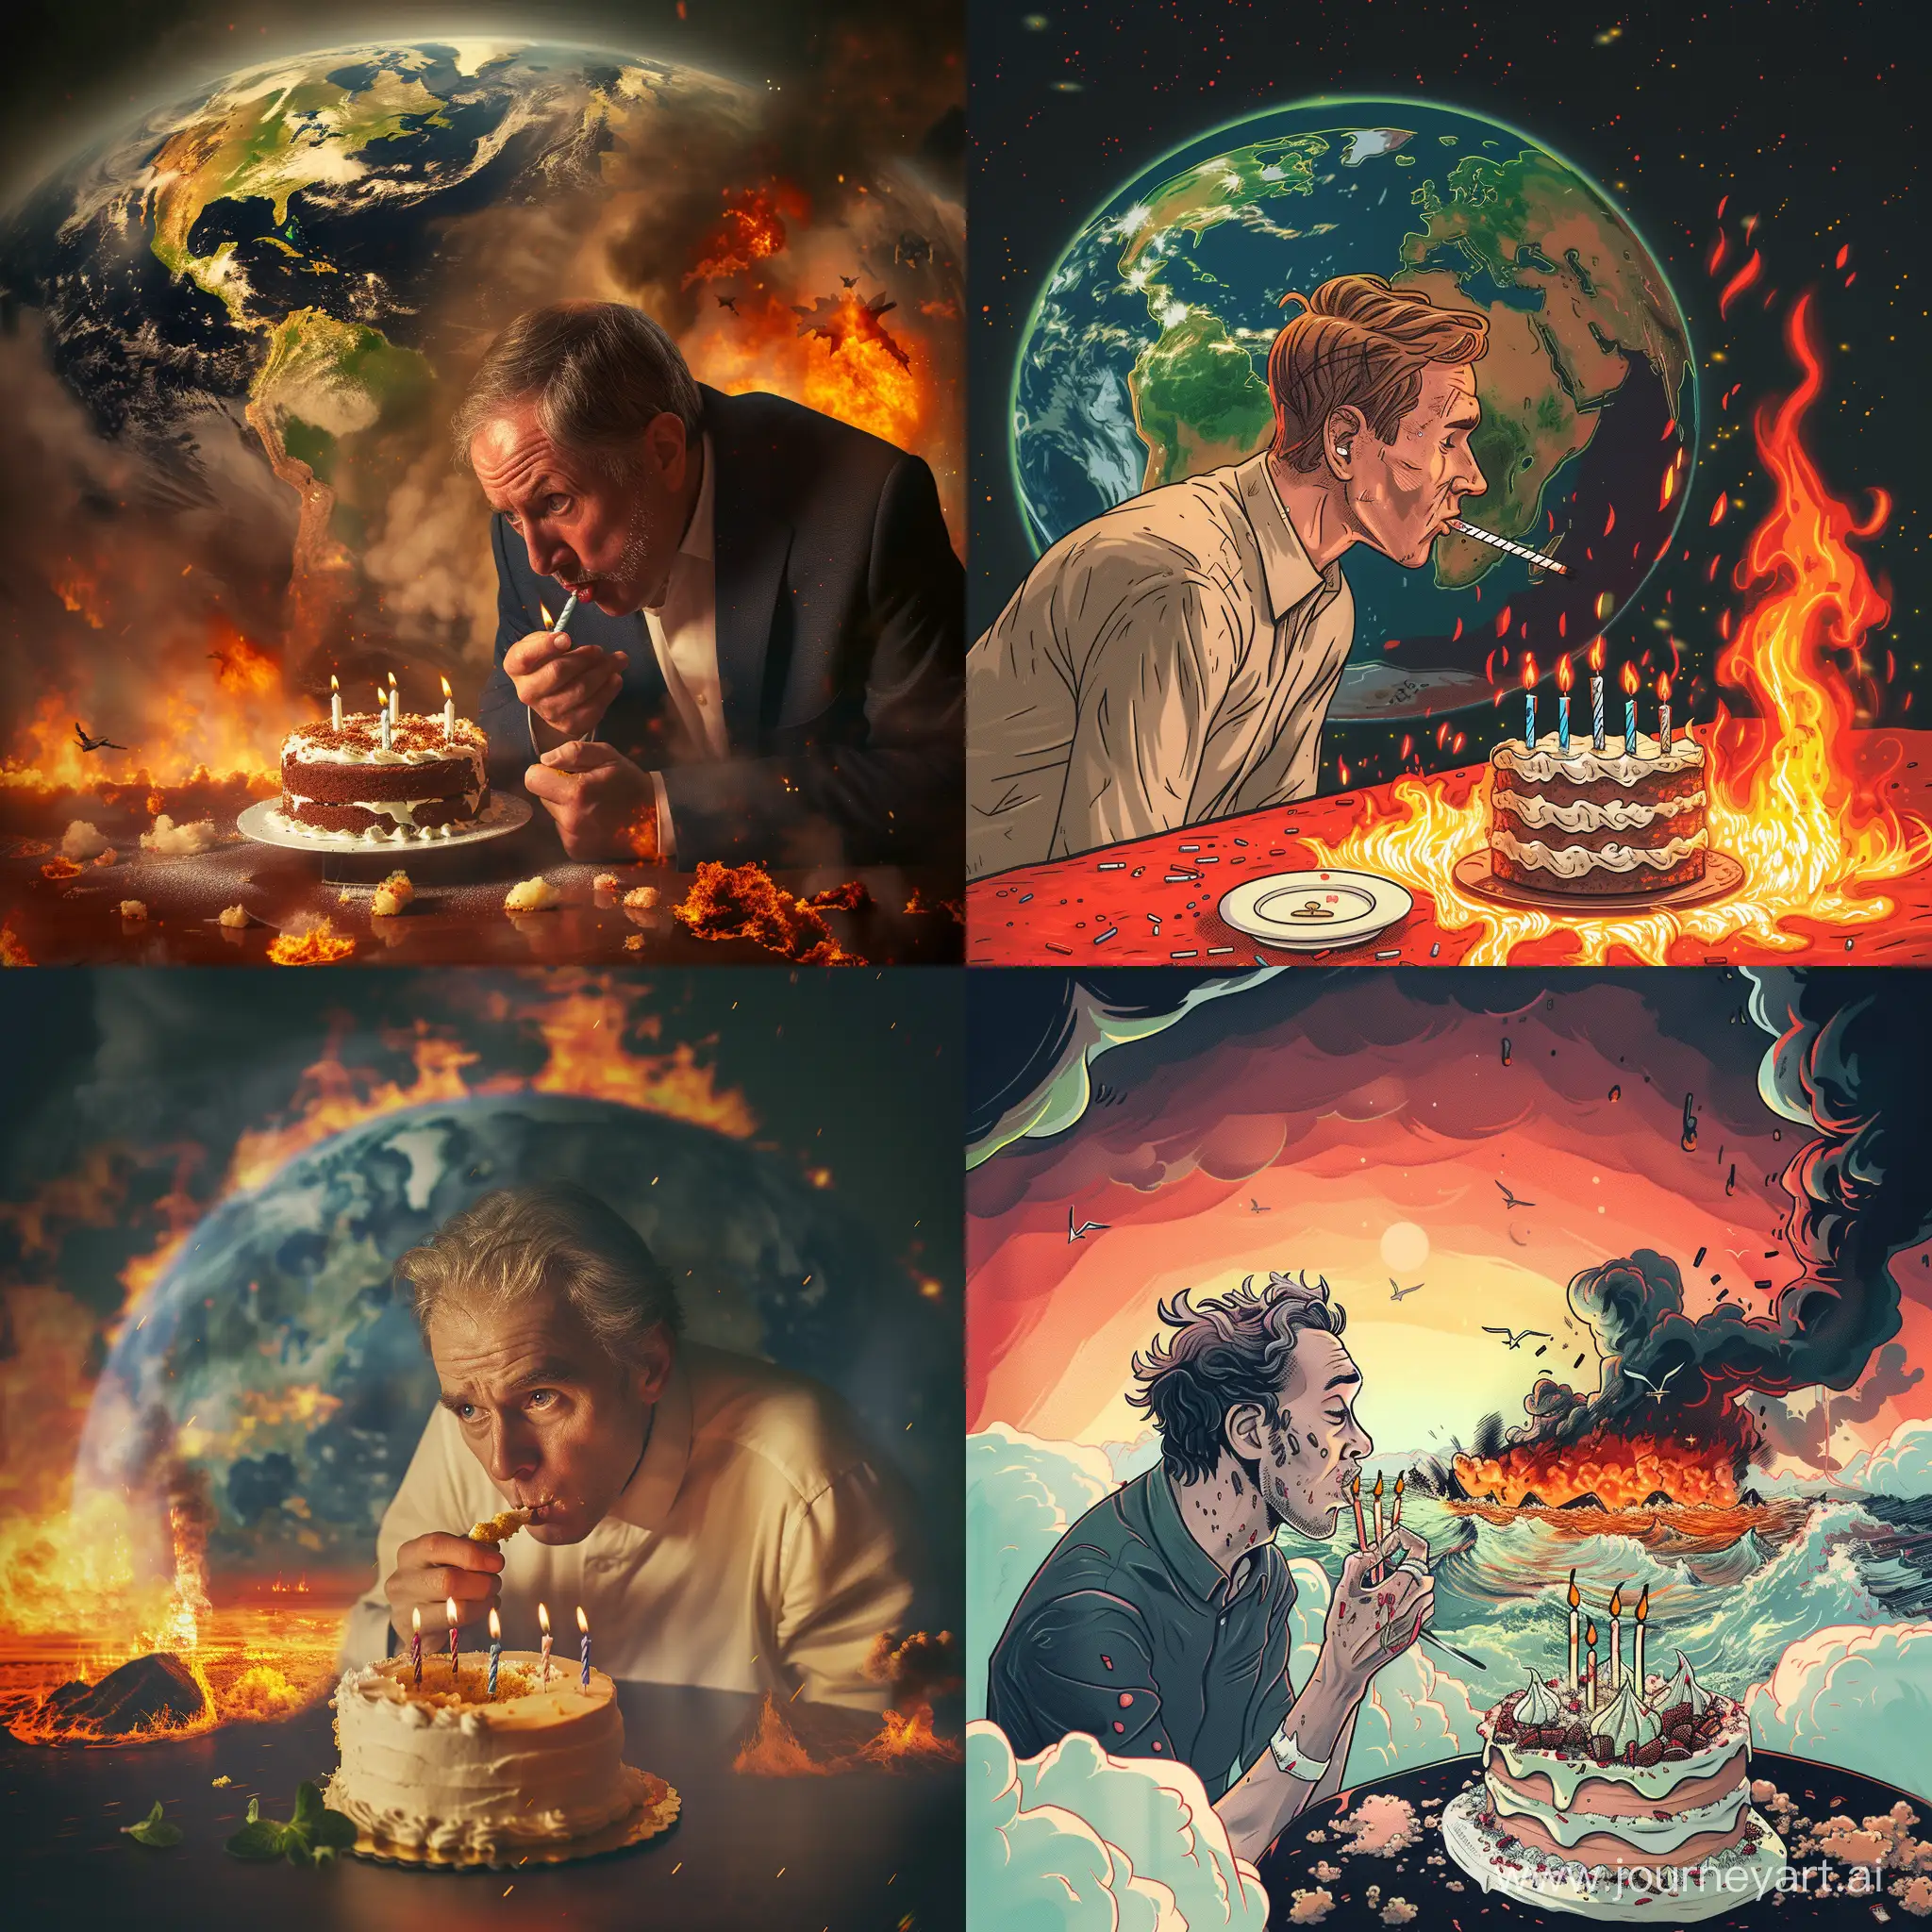 haz una imagen de un emprendedor digital soplando las velas de un pastel mientras el mundo está en llamas o apocalipsis